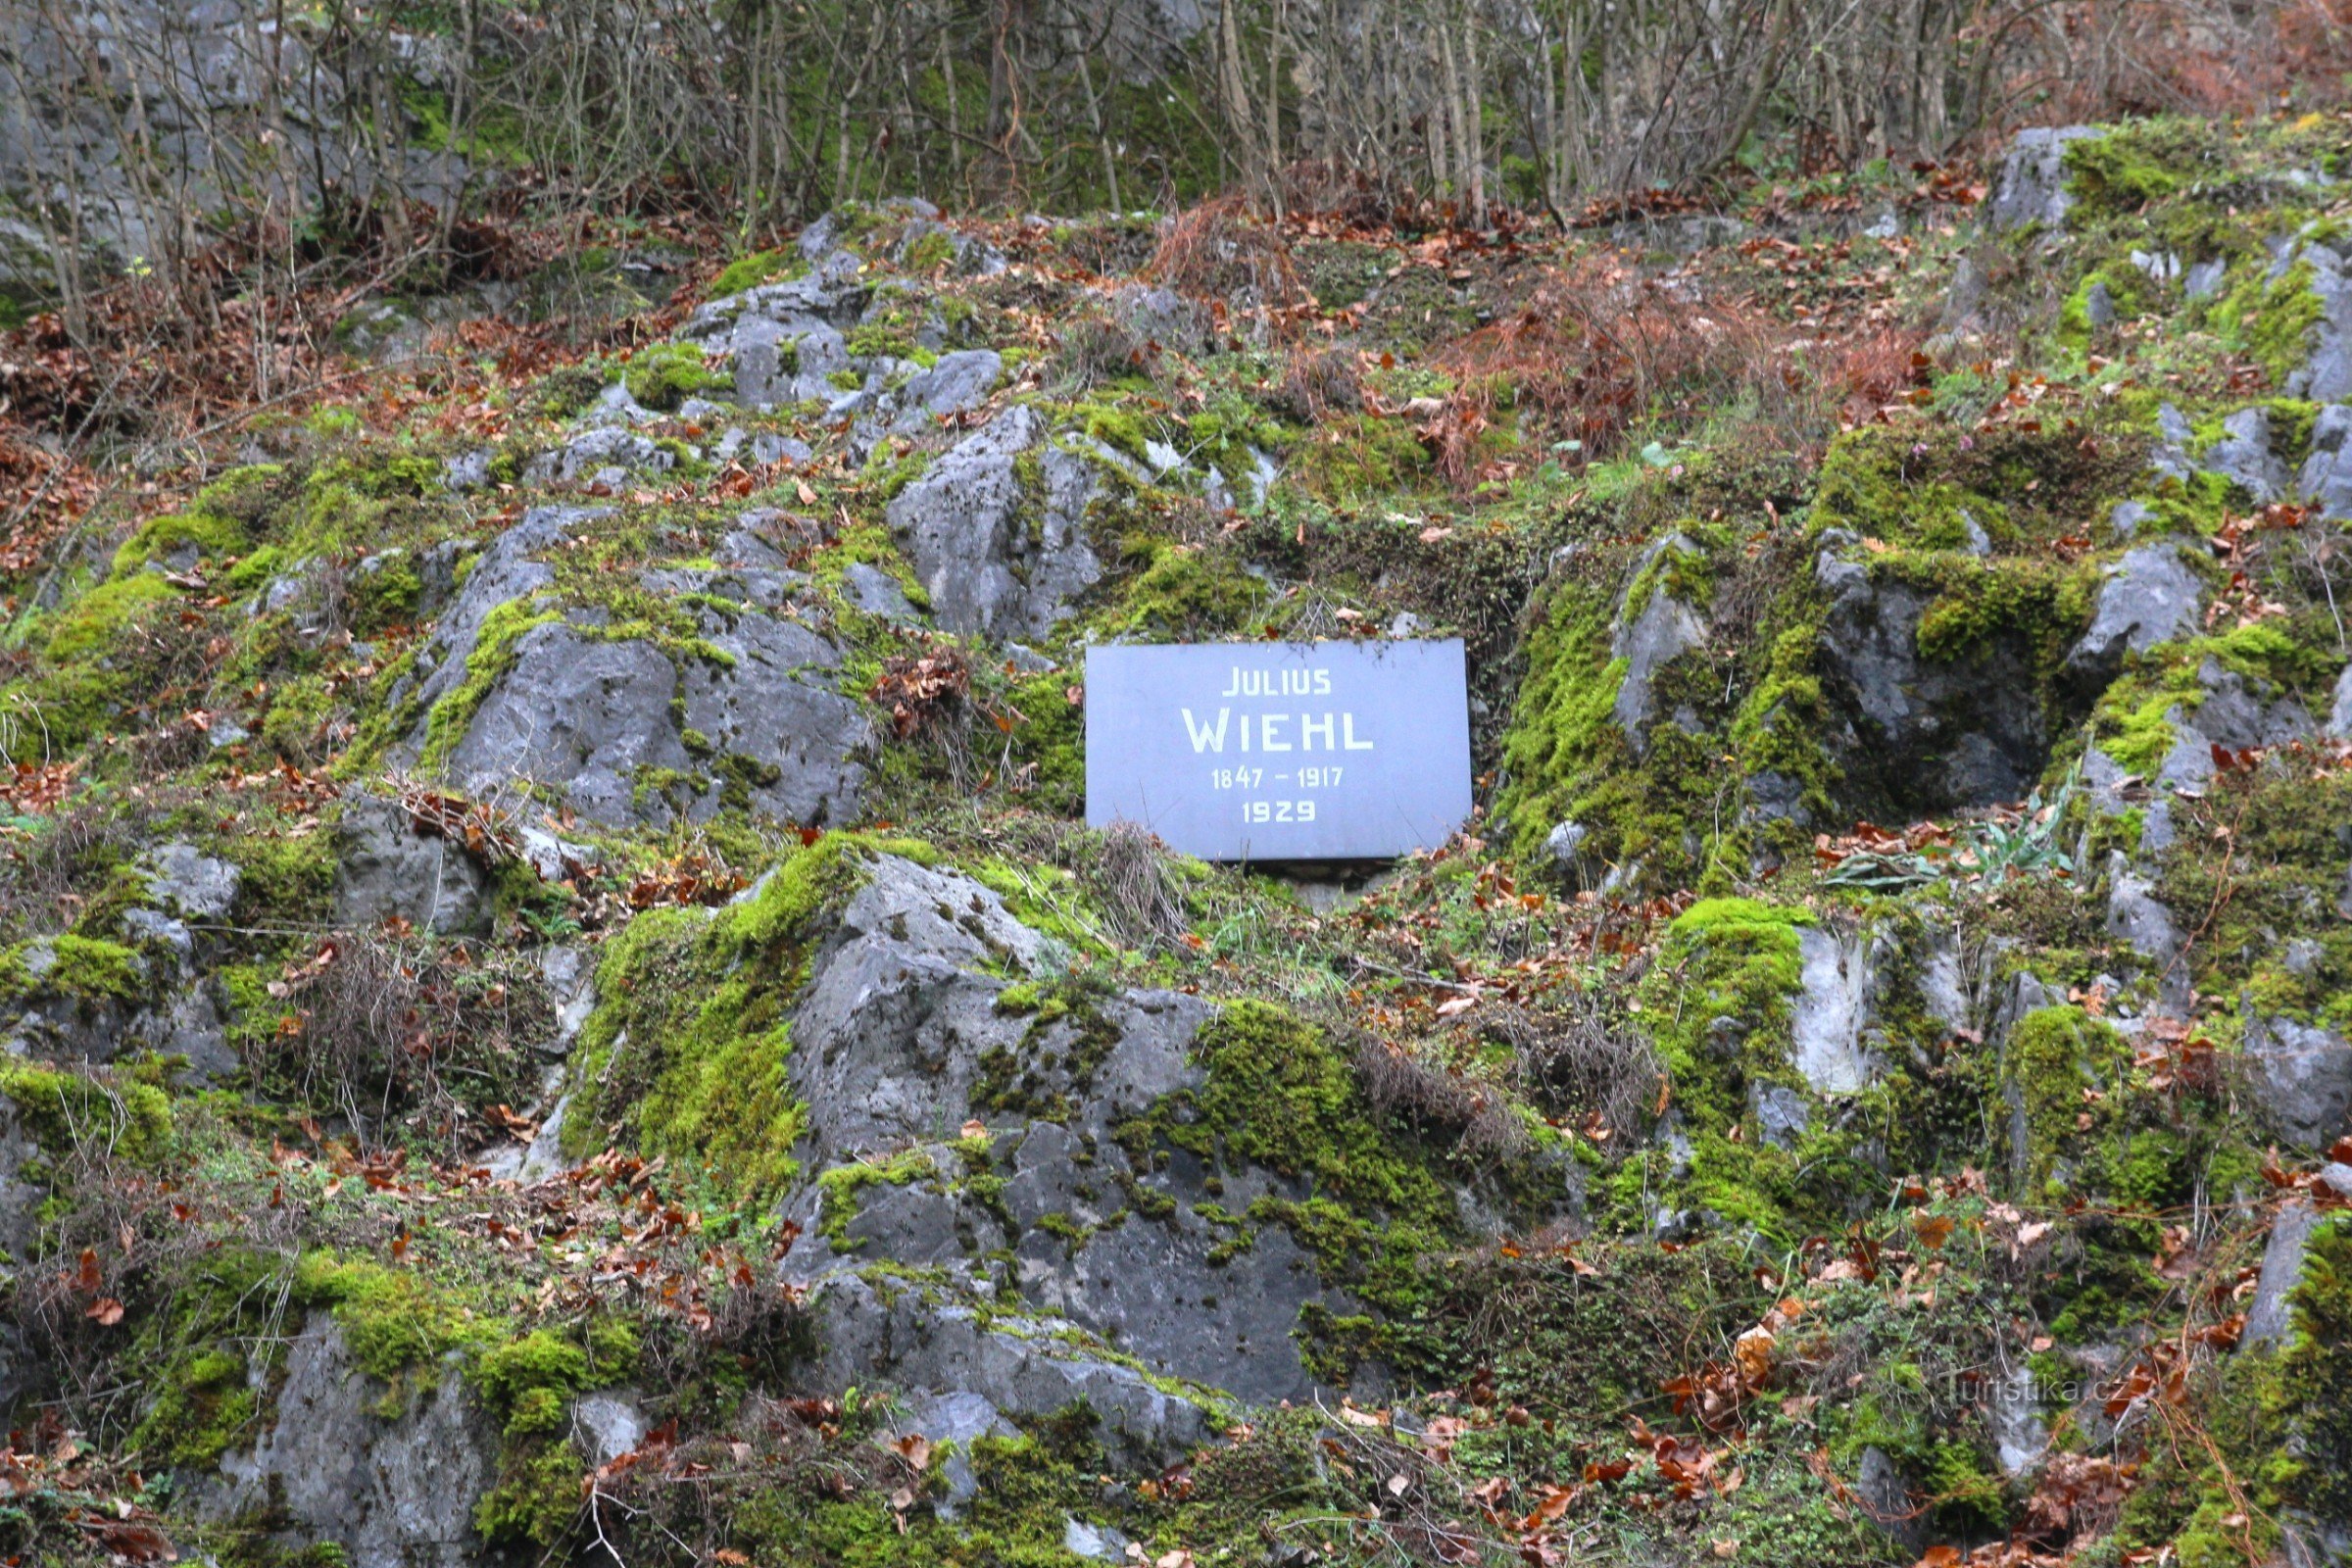 La placa conmemorativa se encuentra en la pendiente pedregosa debajo del viejo tronco campesino.